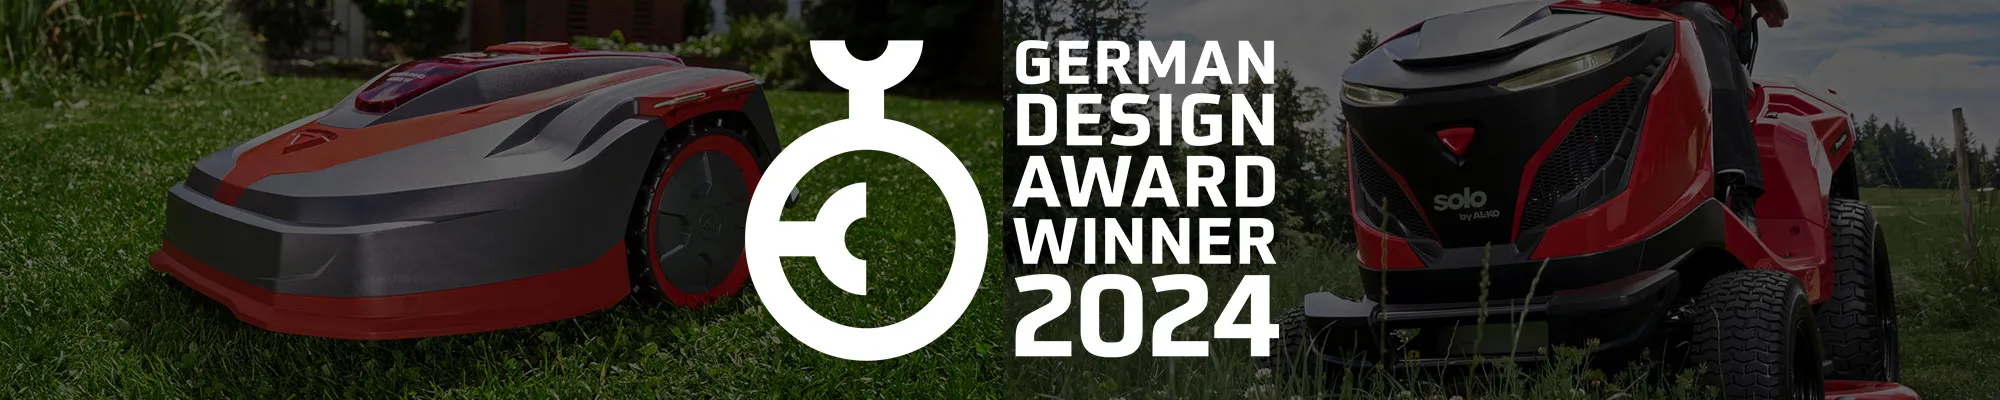 German Design Award 2024 | AL-KO Gartenmagazin